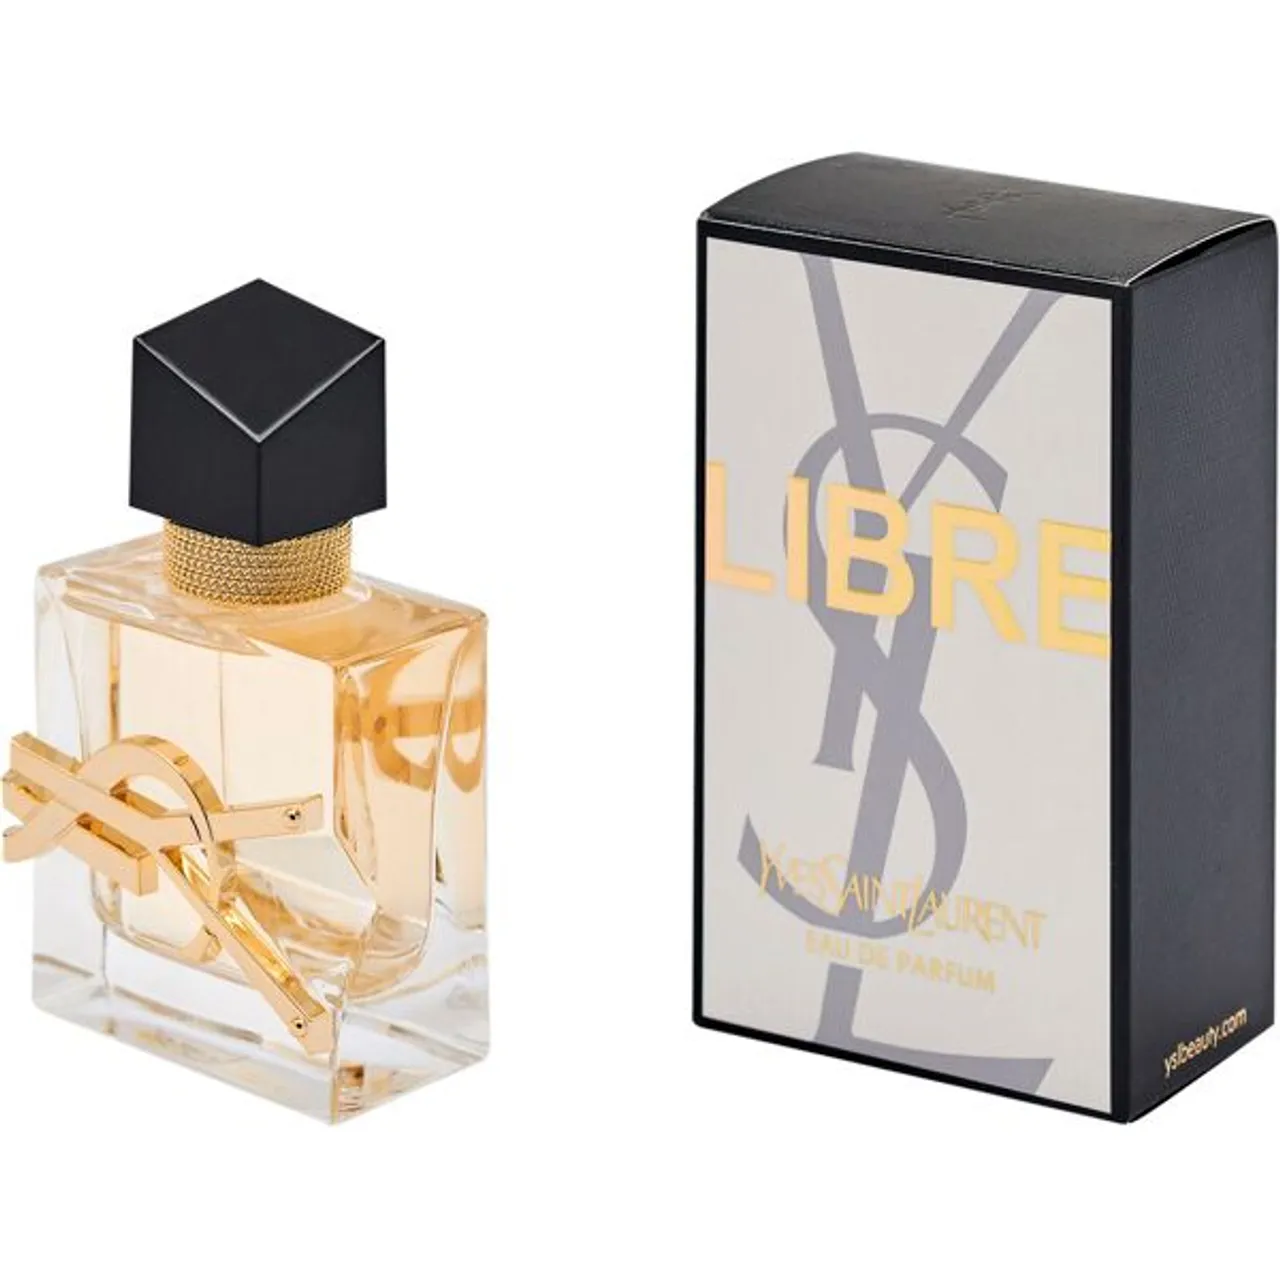 Eau de Parfum YVES SAINT LAURENT "Libre" Parfüms Gr. 30 ml, farblos (transparent) Damen Eau de Parfum